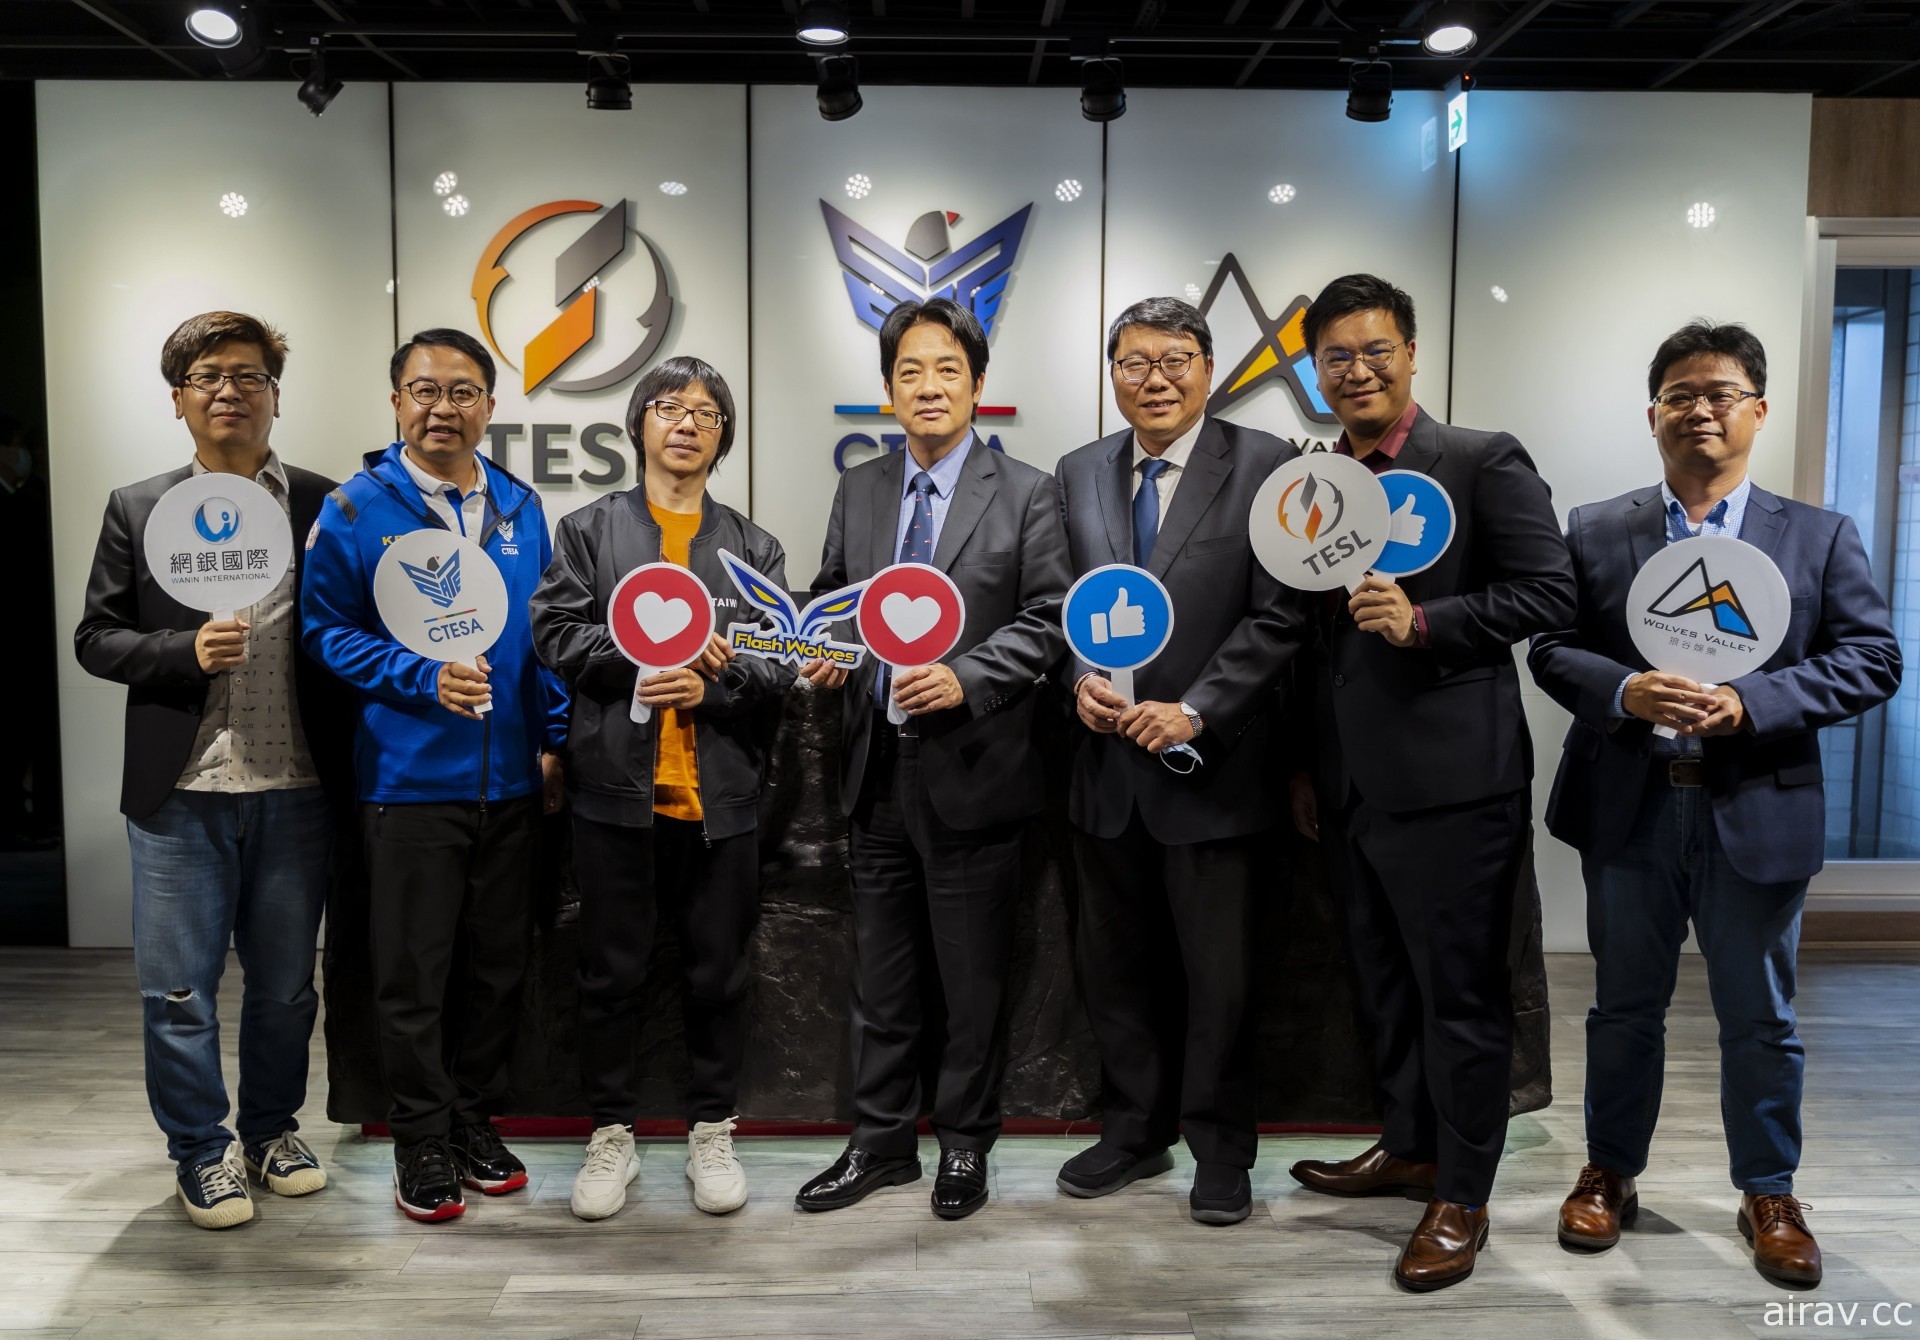 以行動關心台灣電競產業 副總統賴清德親訪 CTESA 與 TESL 並體驗《酉閃町》與播報工作